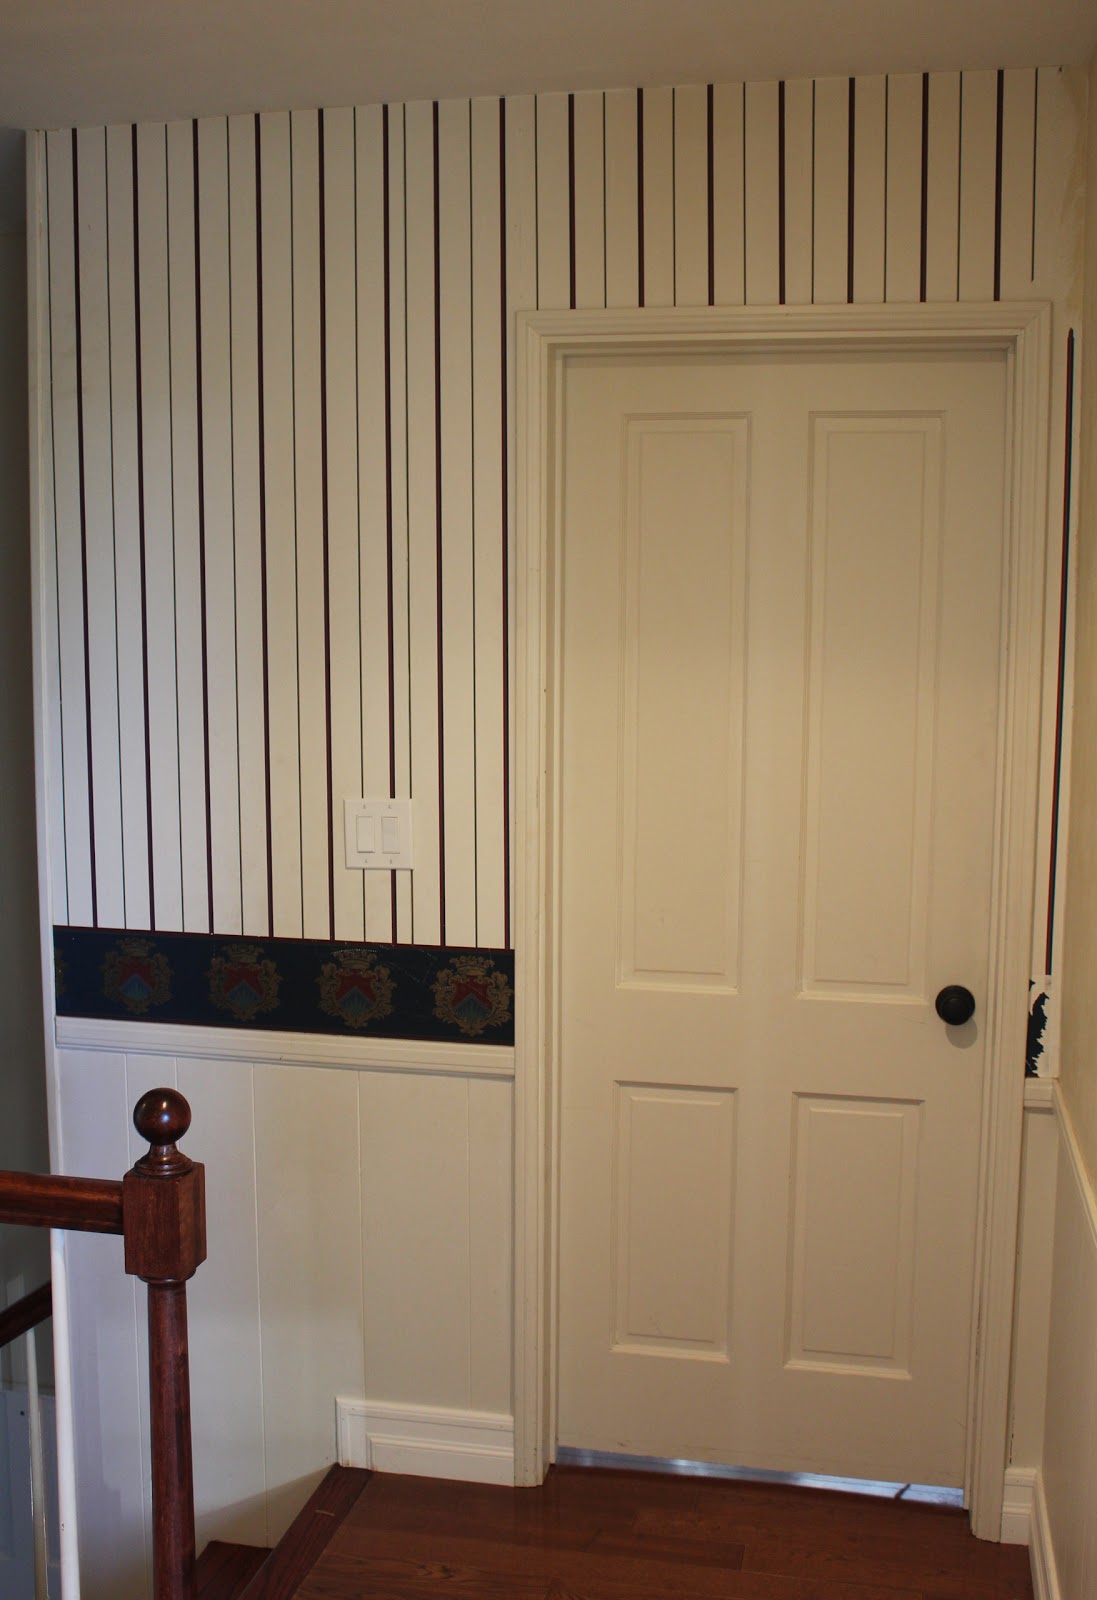 wainscoting wallpaper,room,property,product,door,floor